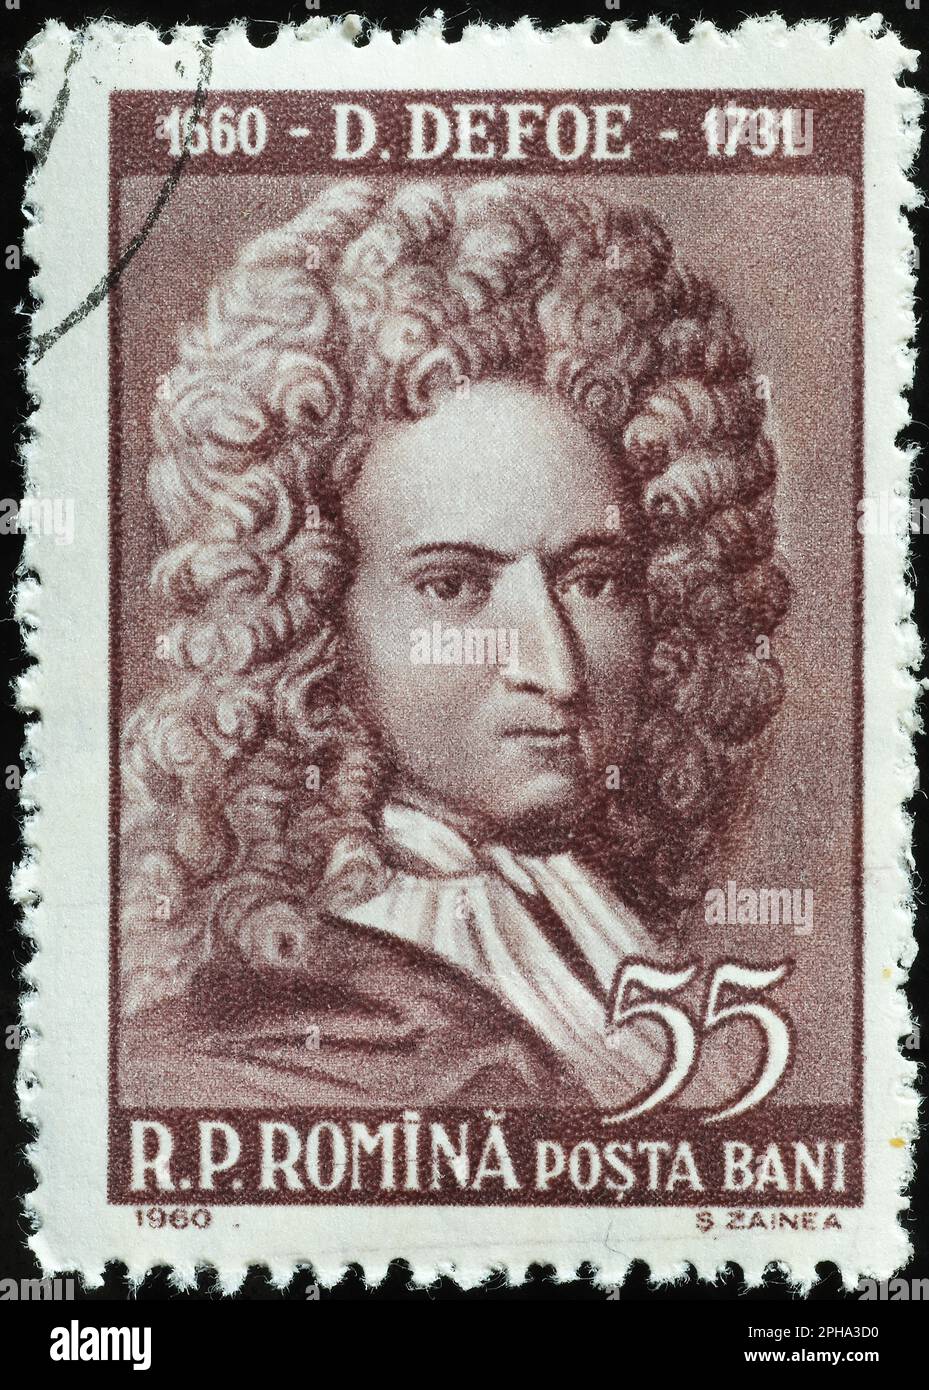 Daniel Degoe sur l'ancien timbre-poste de la Roumanie Banque D'Images